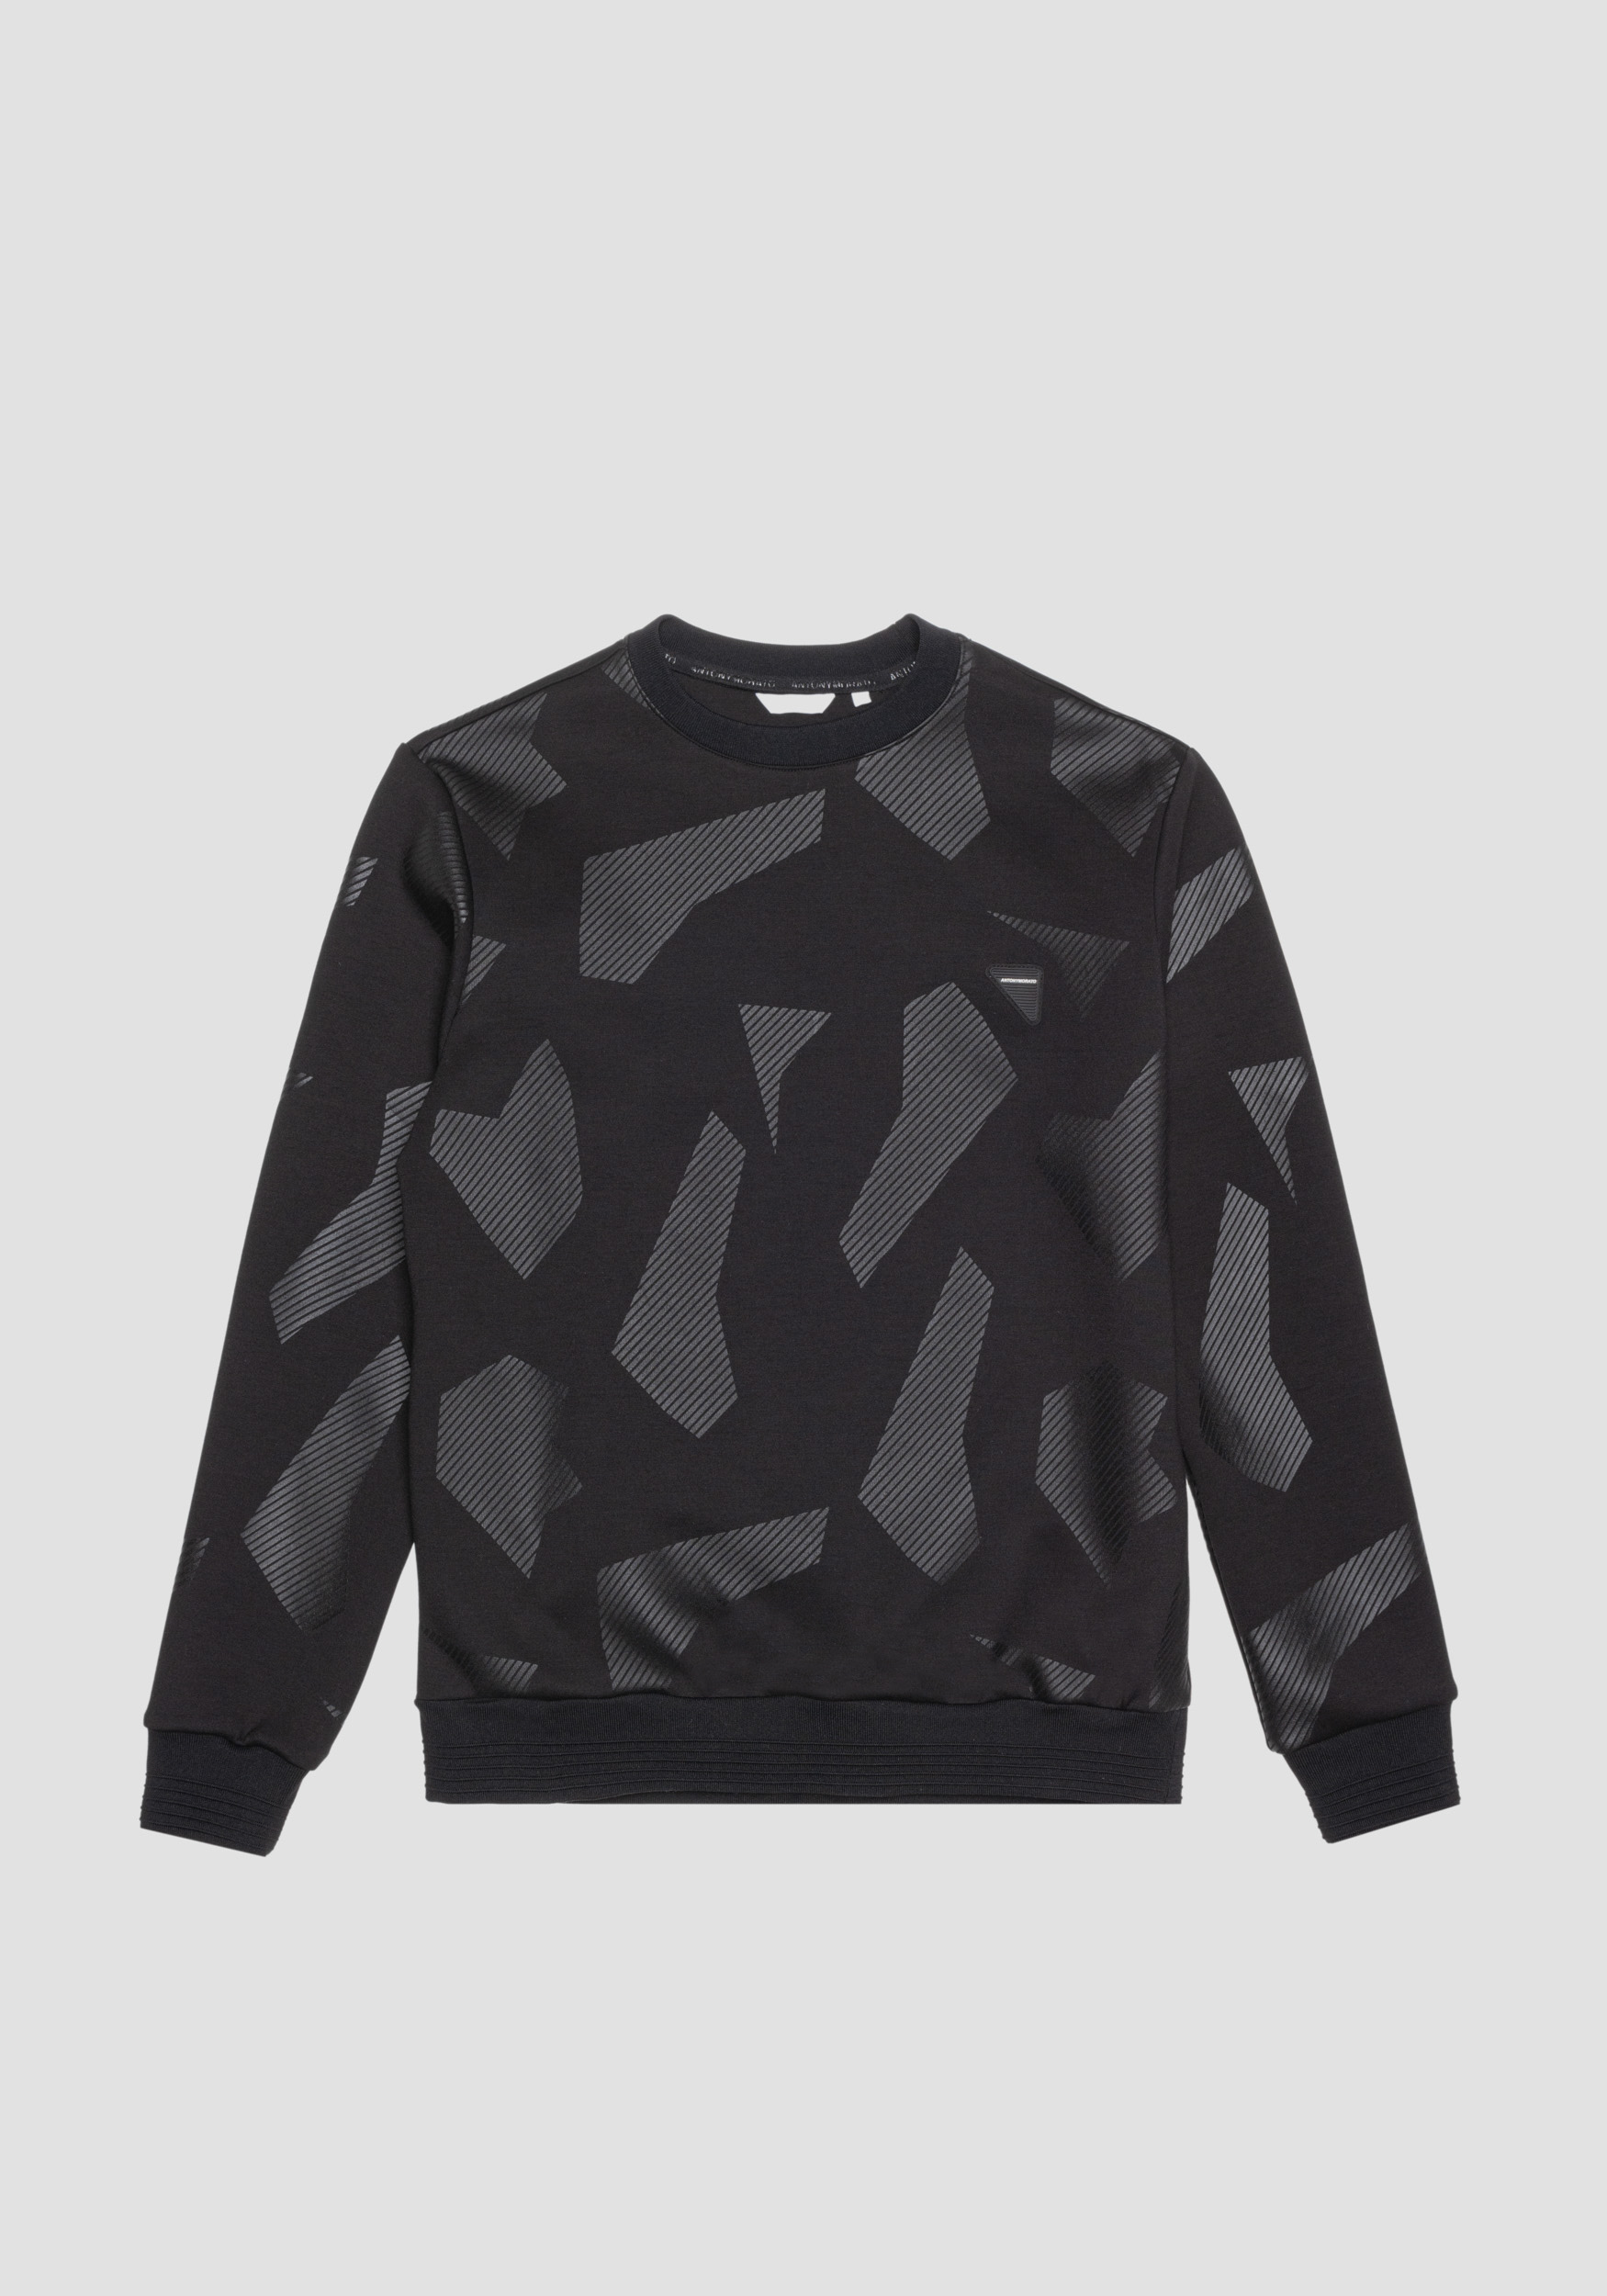 Antony Morato Sweat-Shirt Regular Fit En Tissu Elastique De Viscose Melangee Avec Imprime Geometrique Noir | Homme Sweat-Shirts